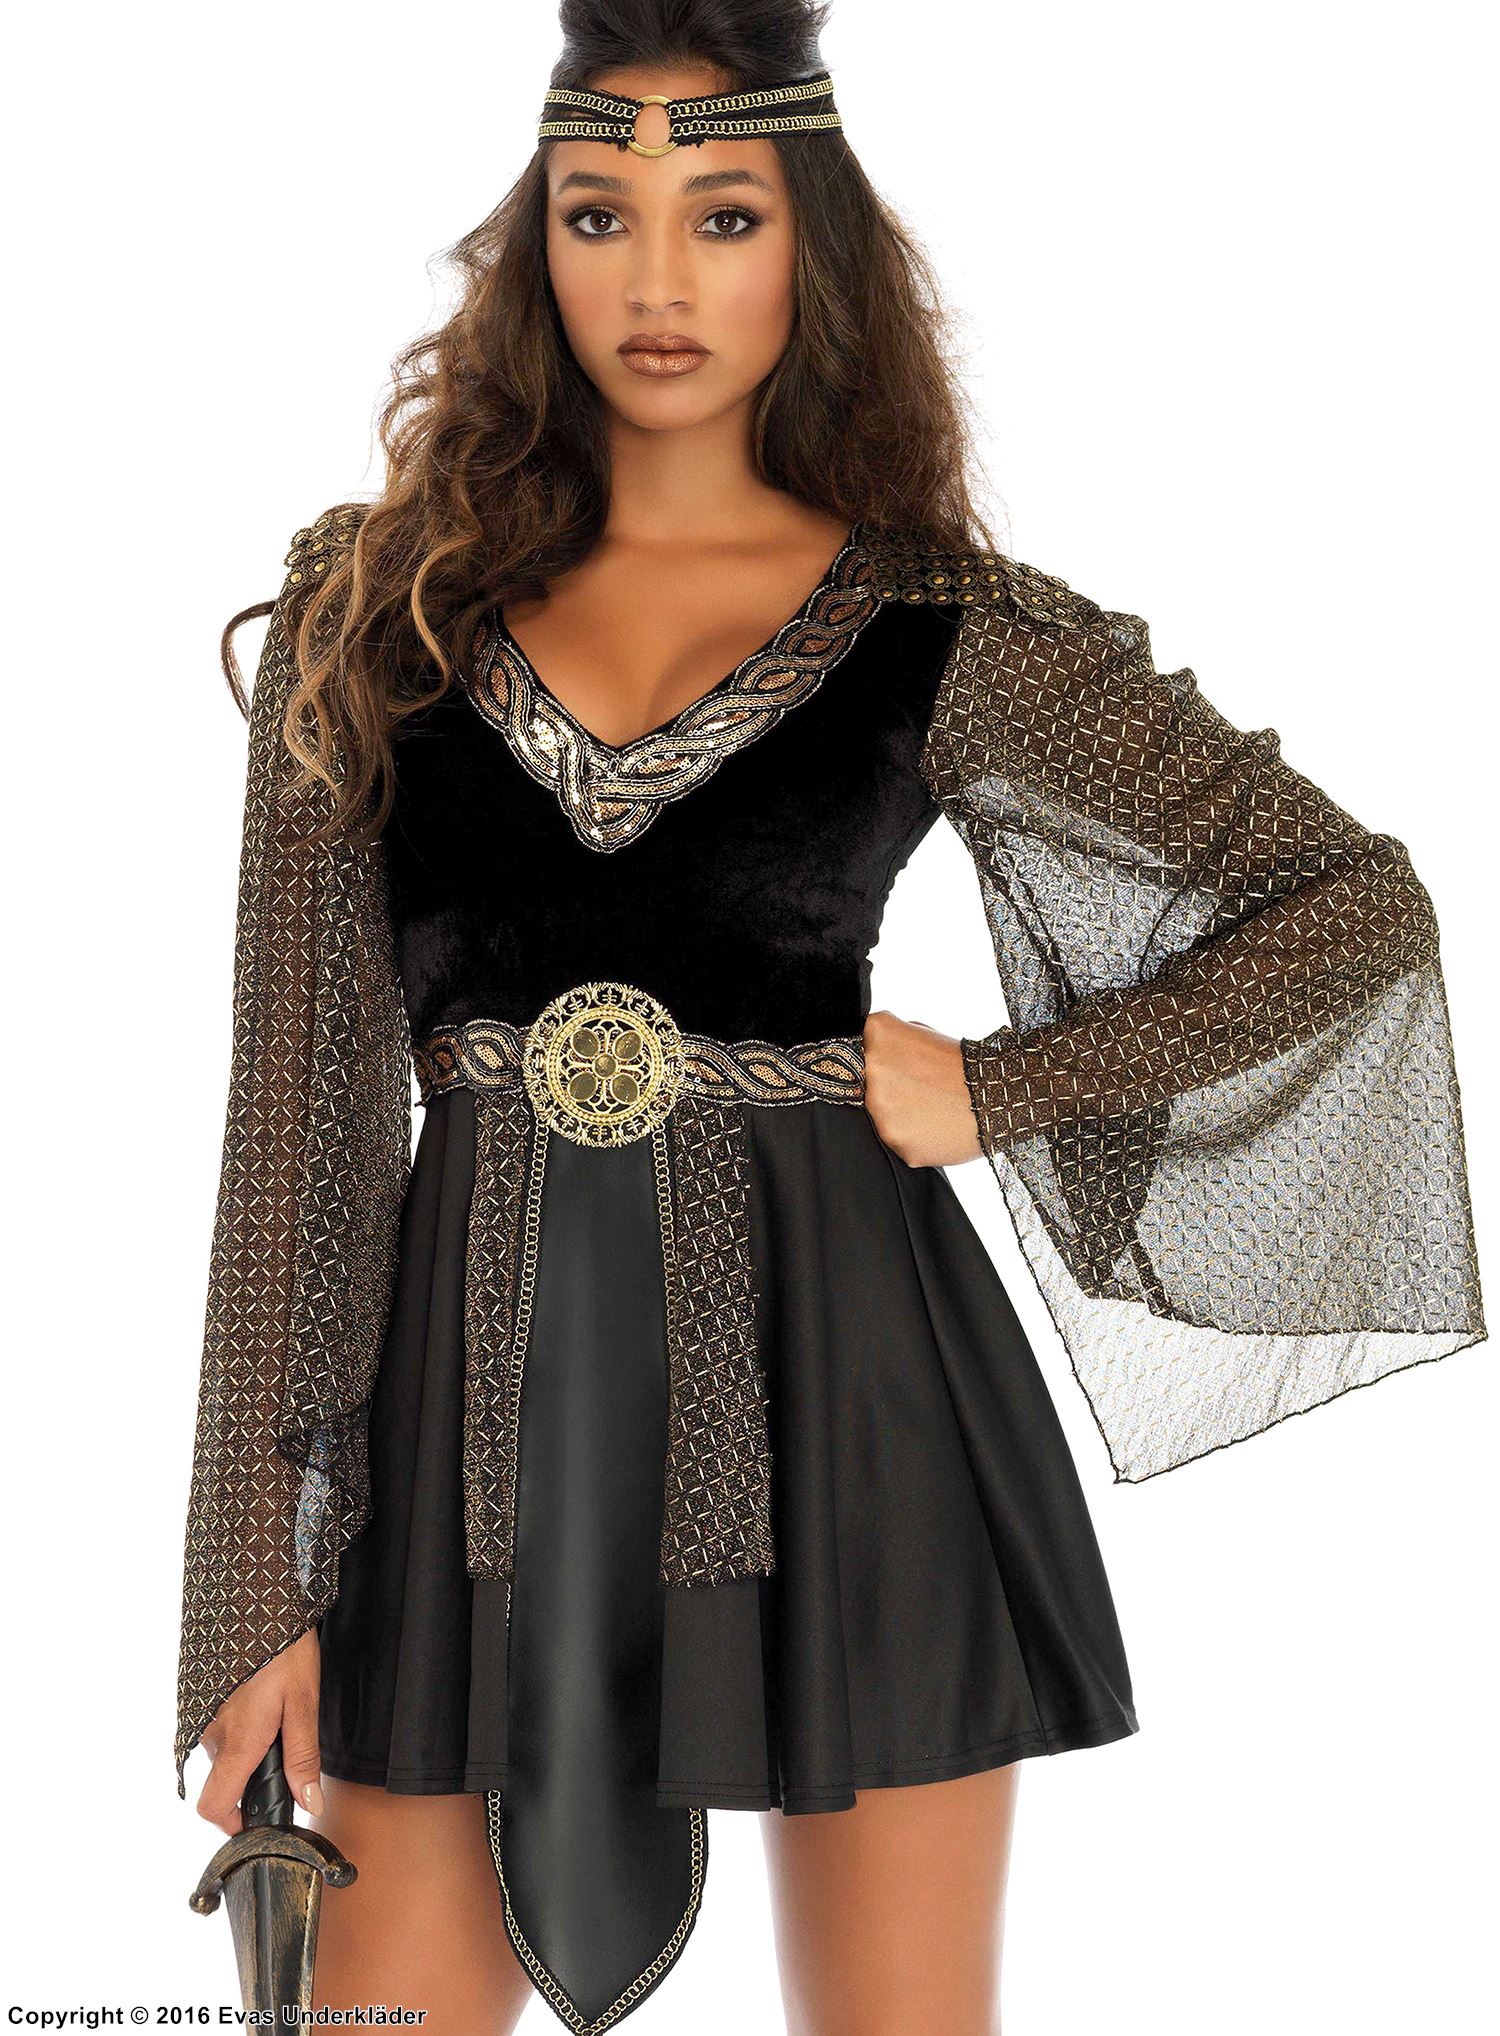 Amazon warrior, costume dress, sequins, mesh sleeves, velvet